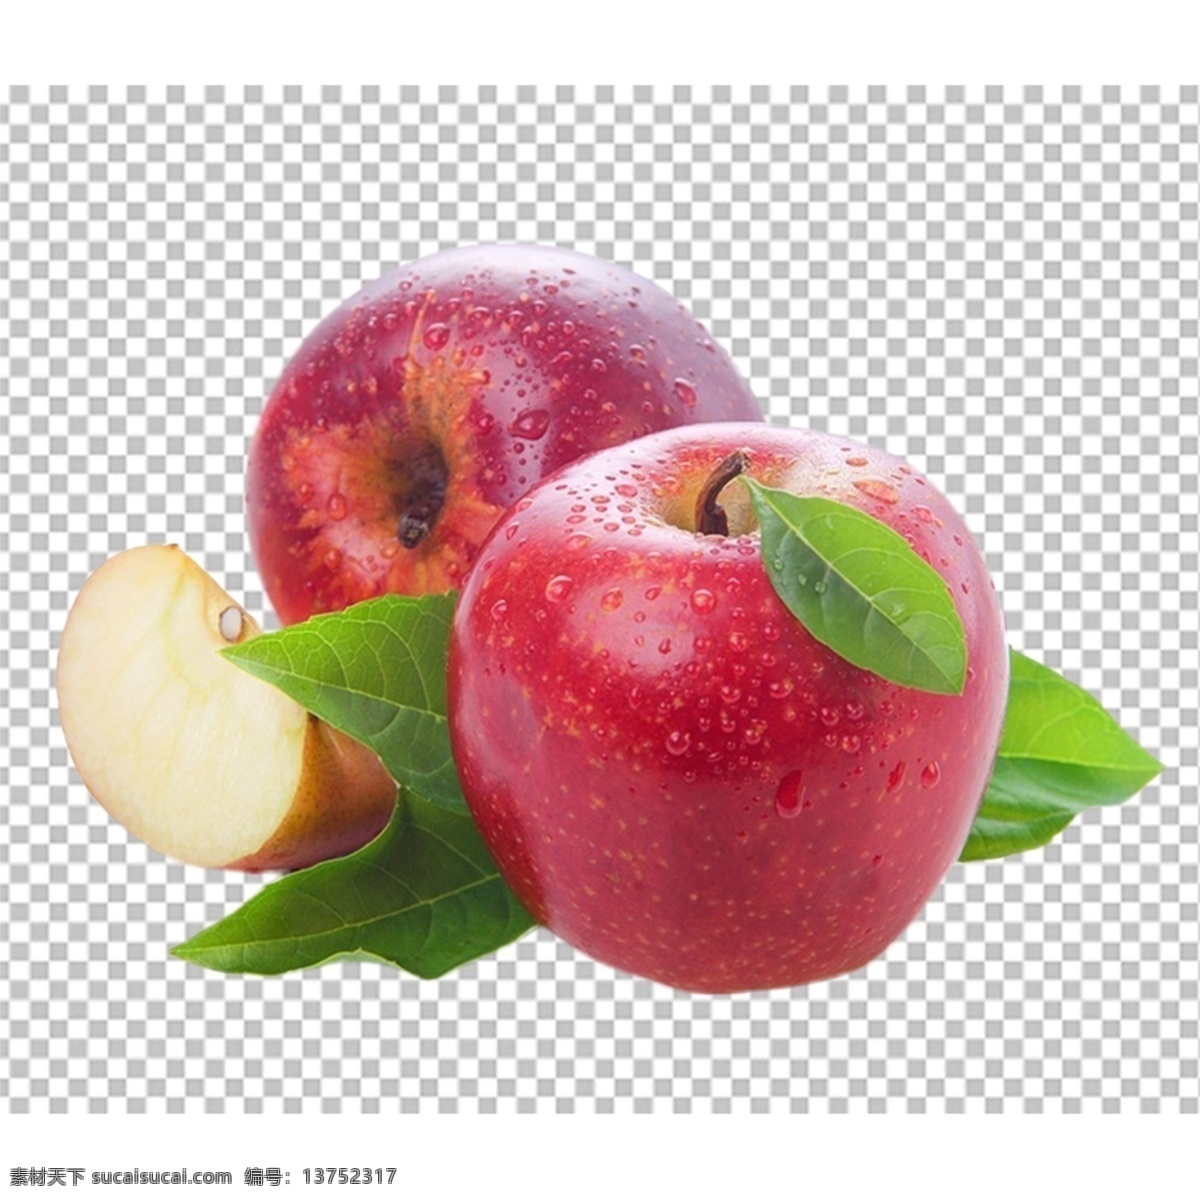 苹果图片 苹果 红苹果 水果特写 水果写真 透明底水果 免抠图 水果 分层图 通道 分层 新鲜 特写 透明背景 透明底 抠图 png图 生物世界 水果透明底